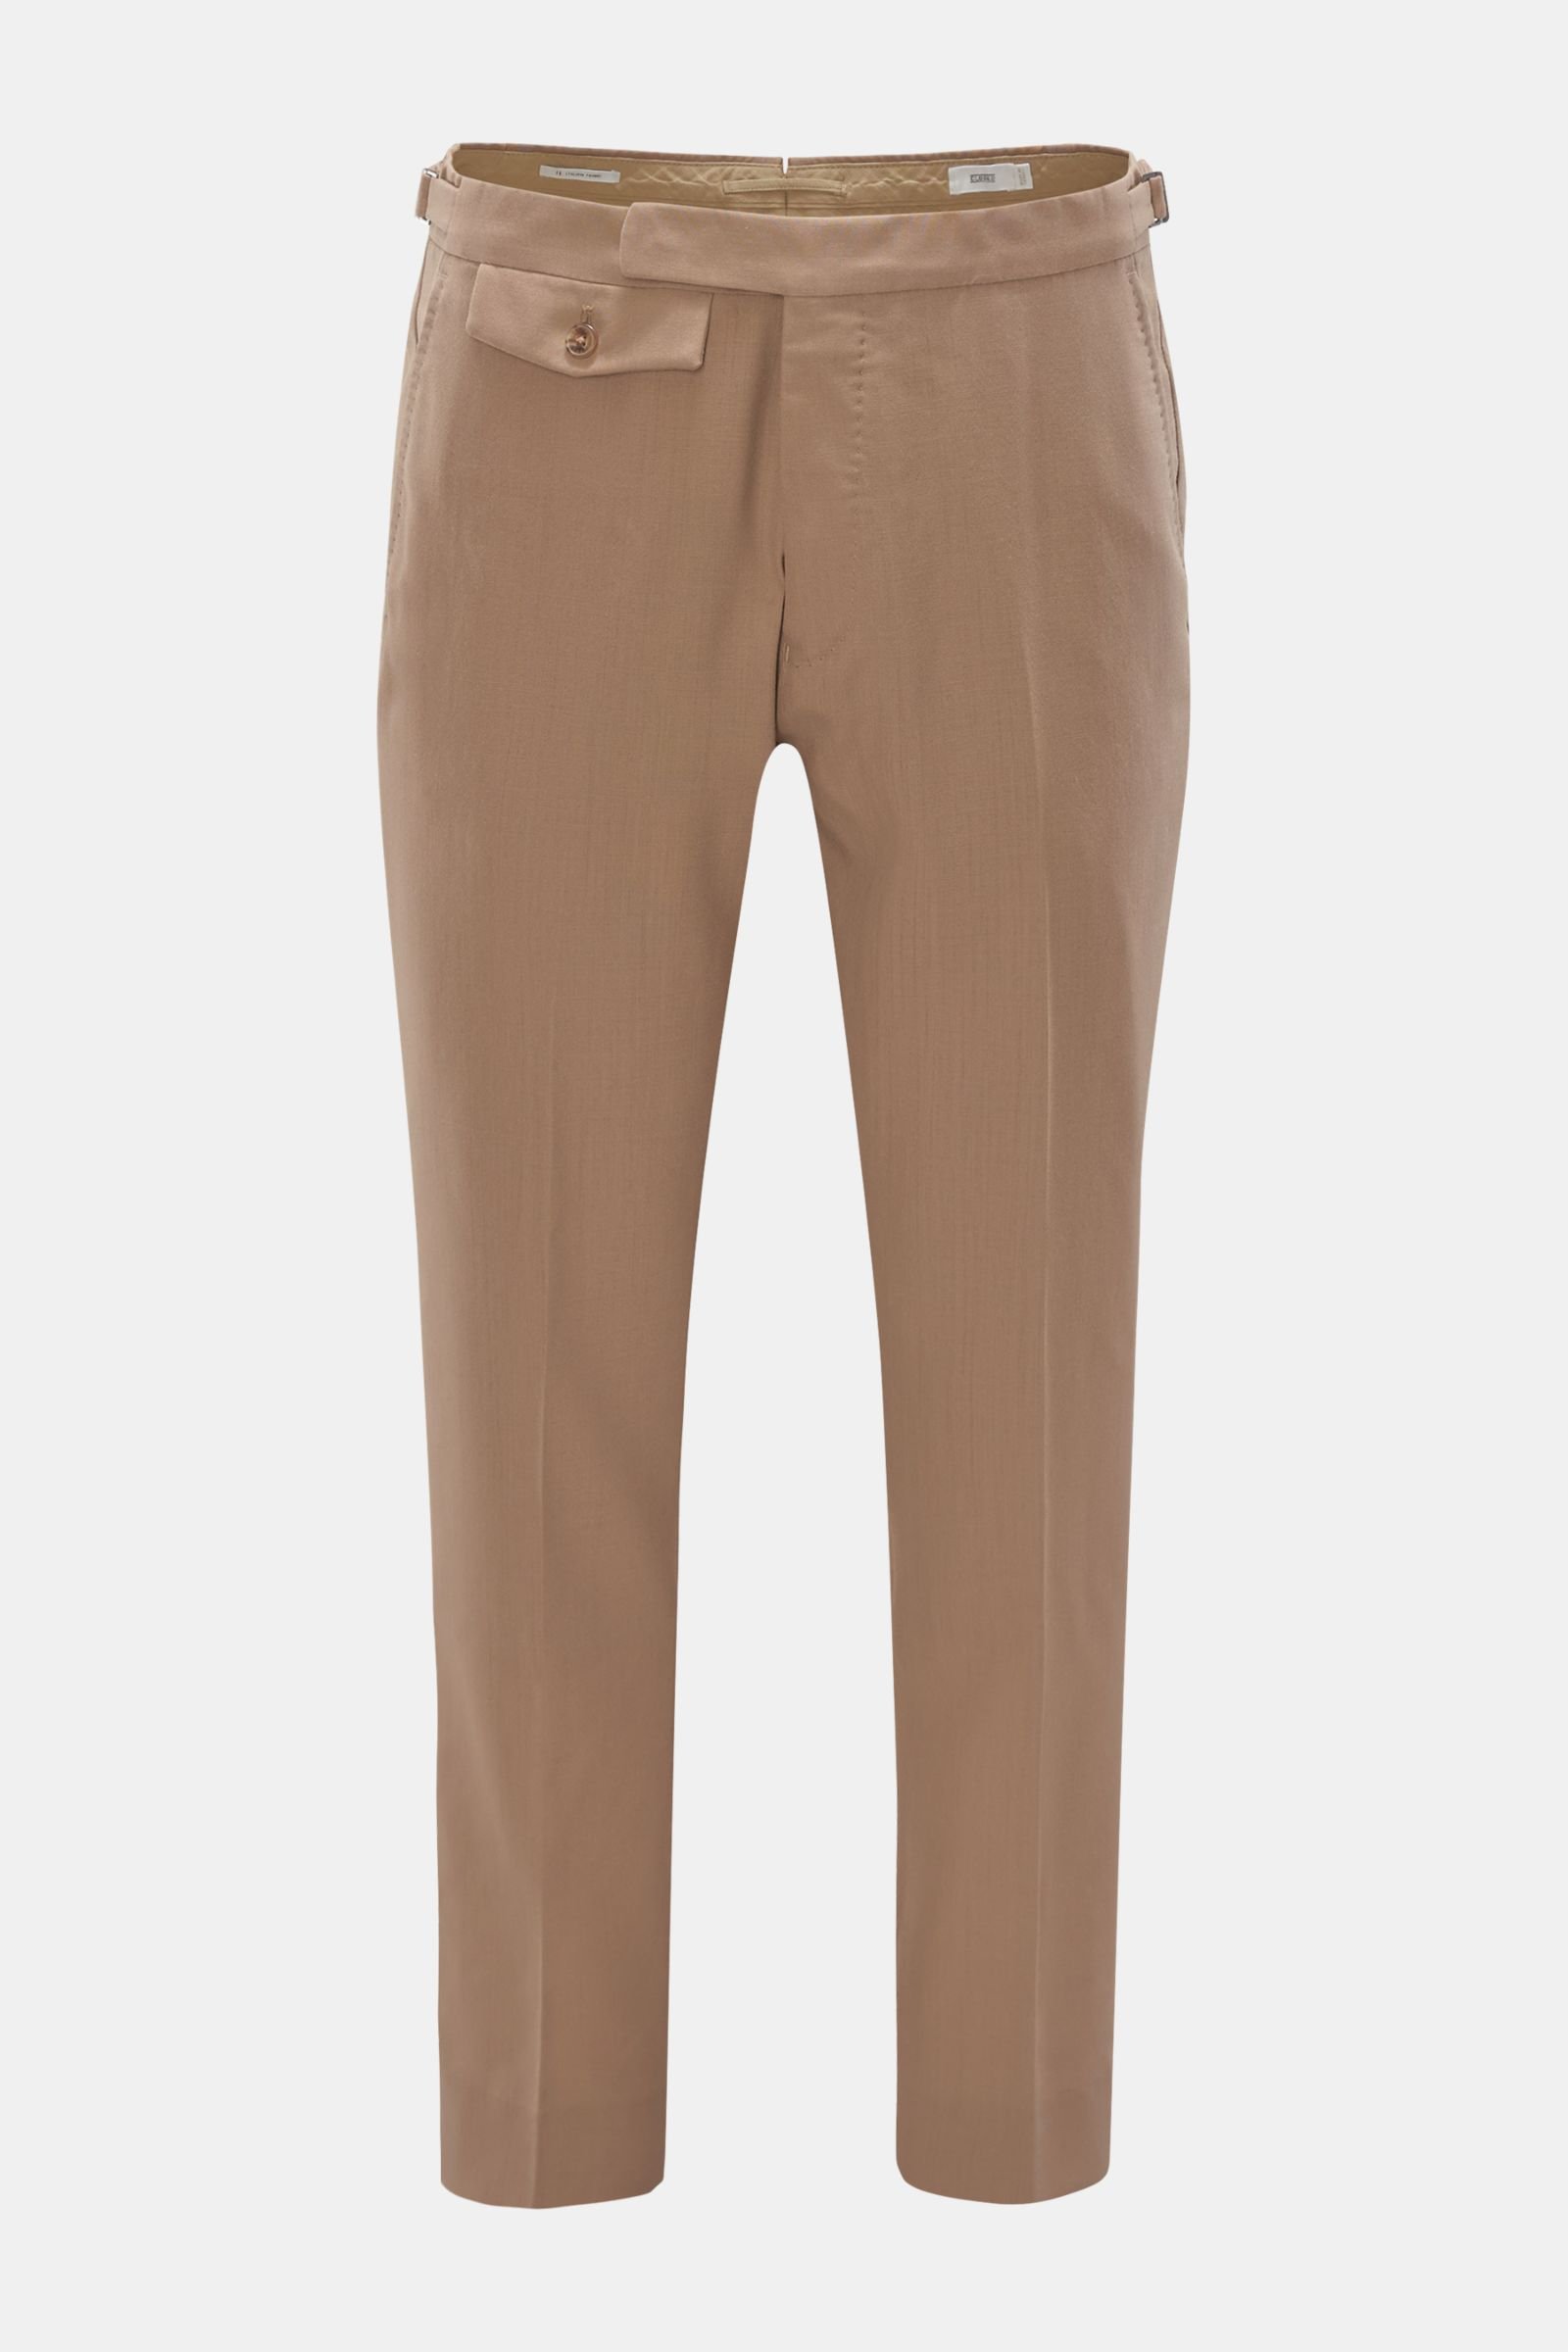 Light Brown Formal Pants – Elysian